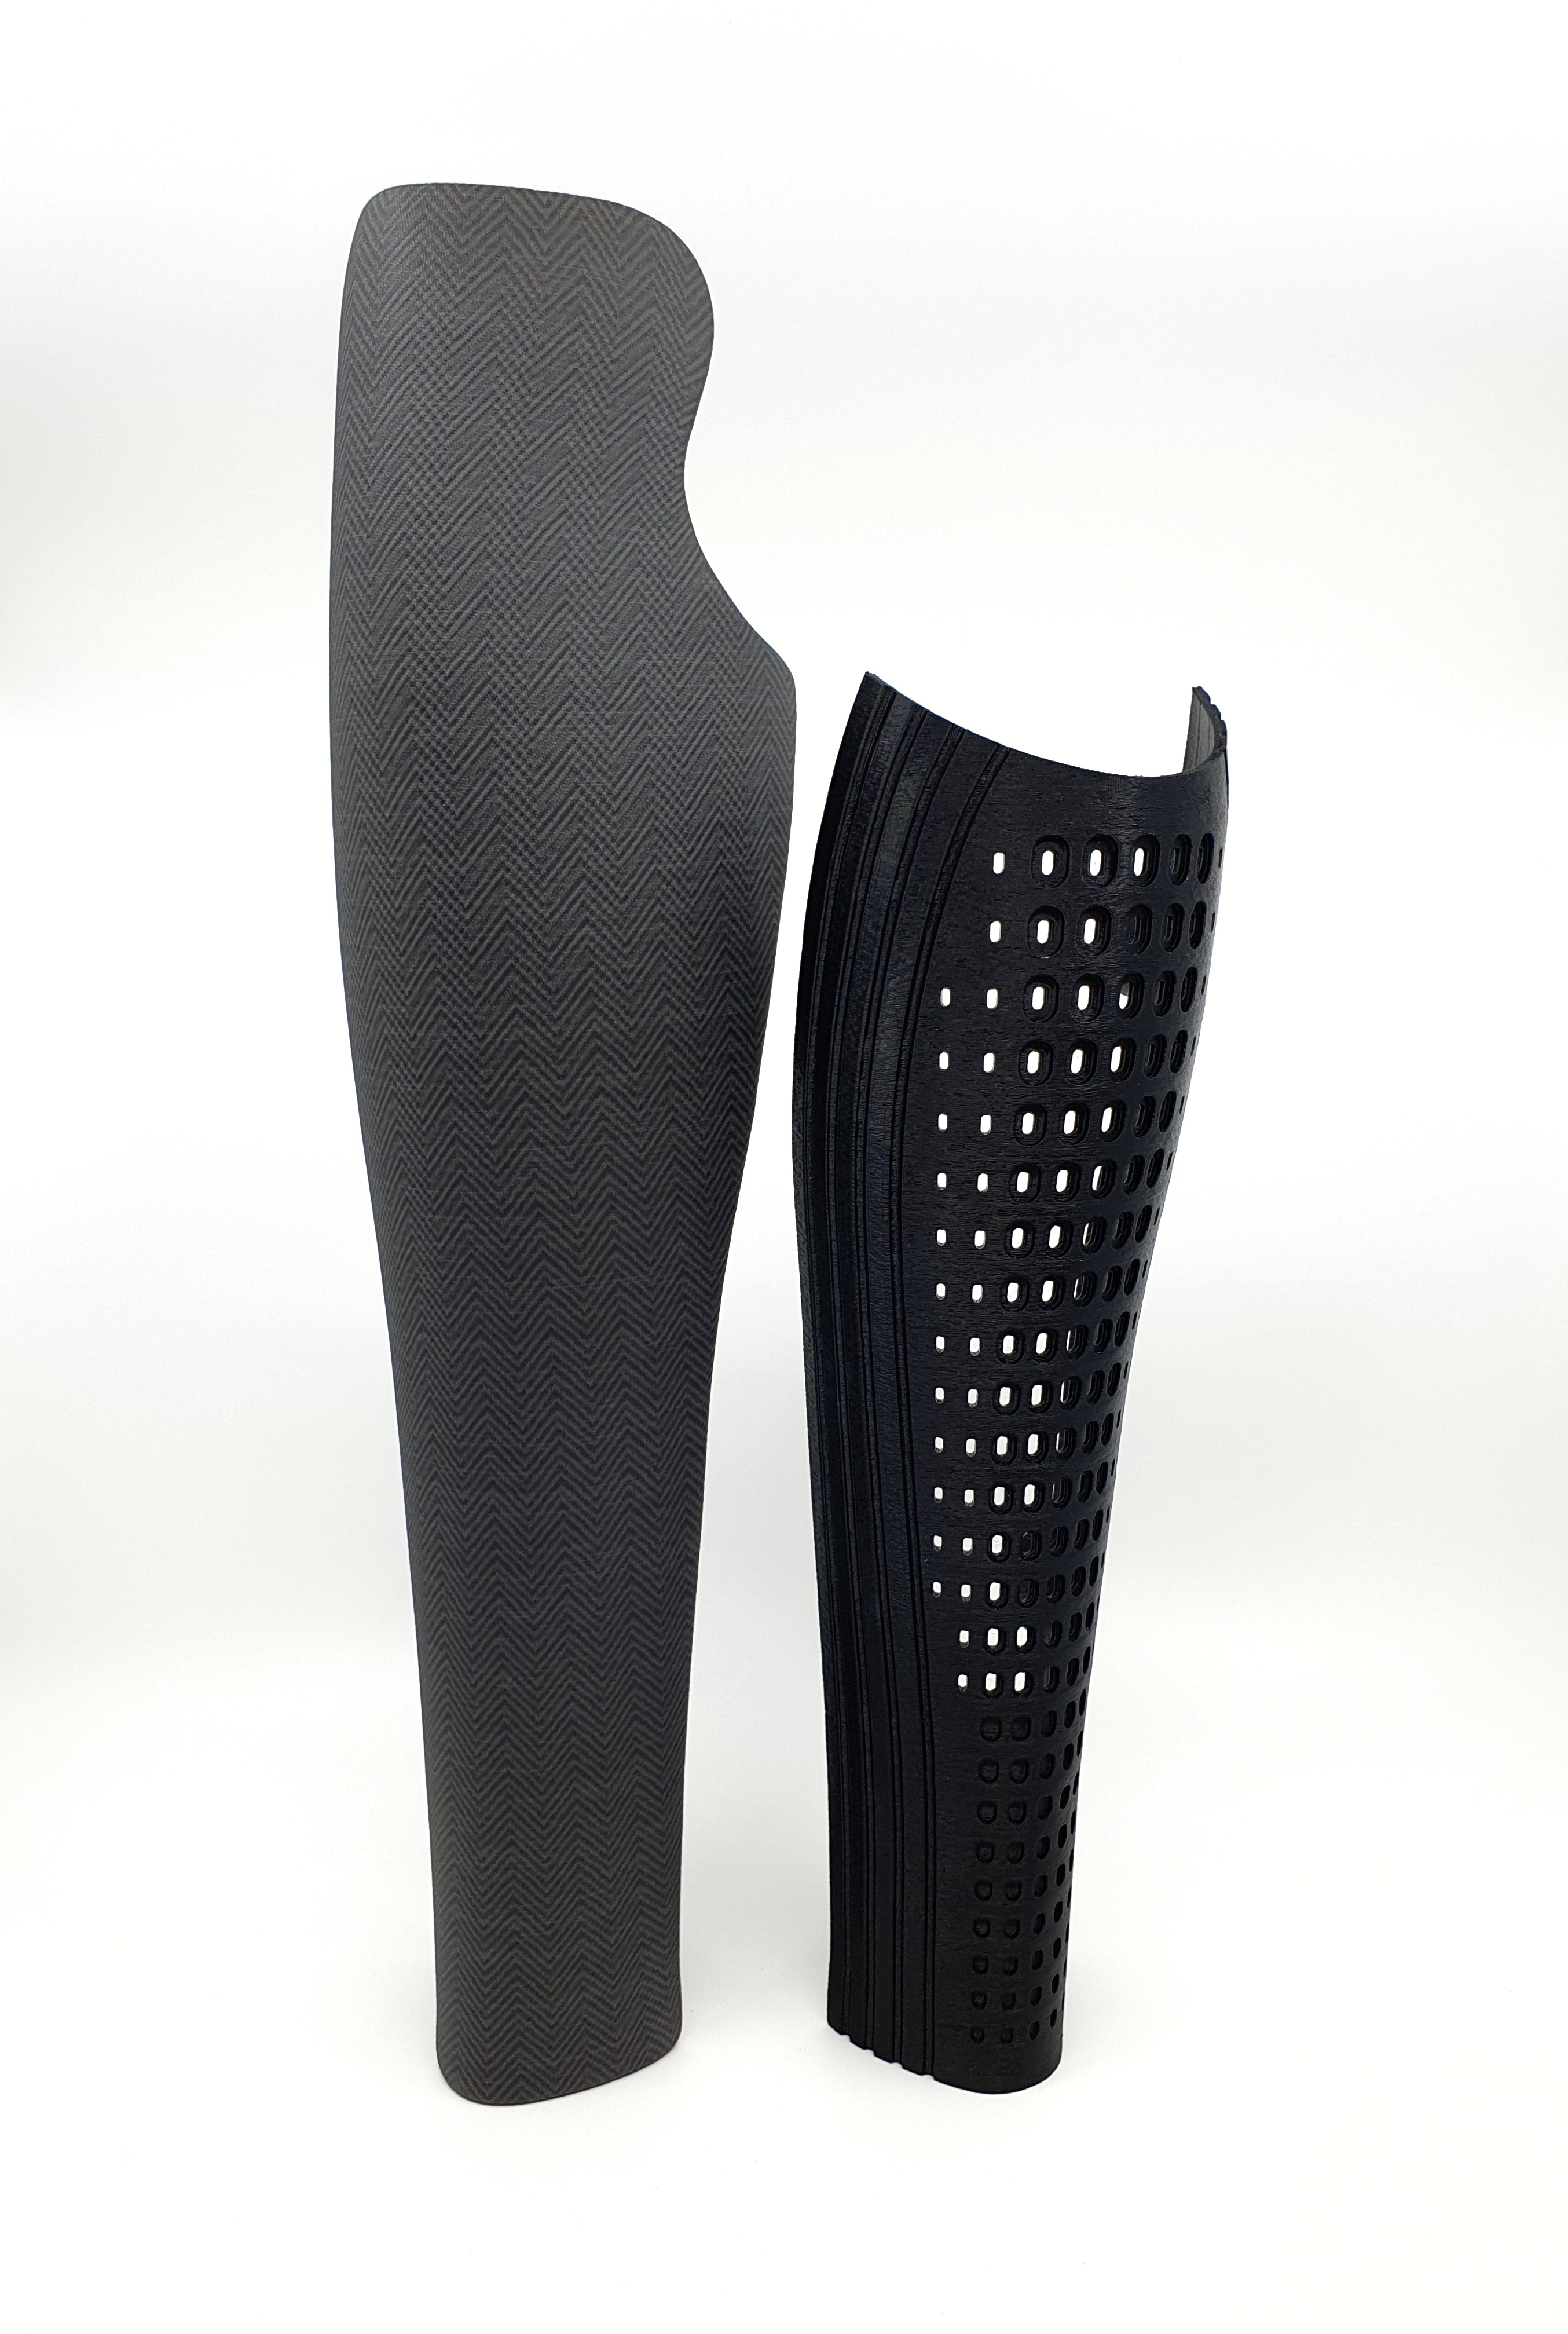 Osłony kosmetyczne protez kończyn dolnych Design Pro Technology Skaj